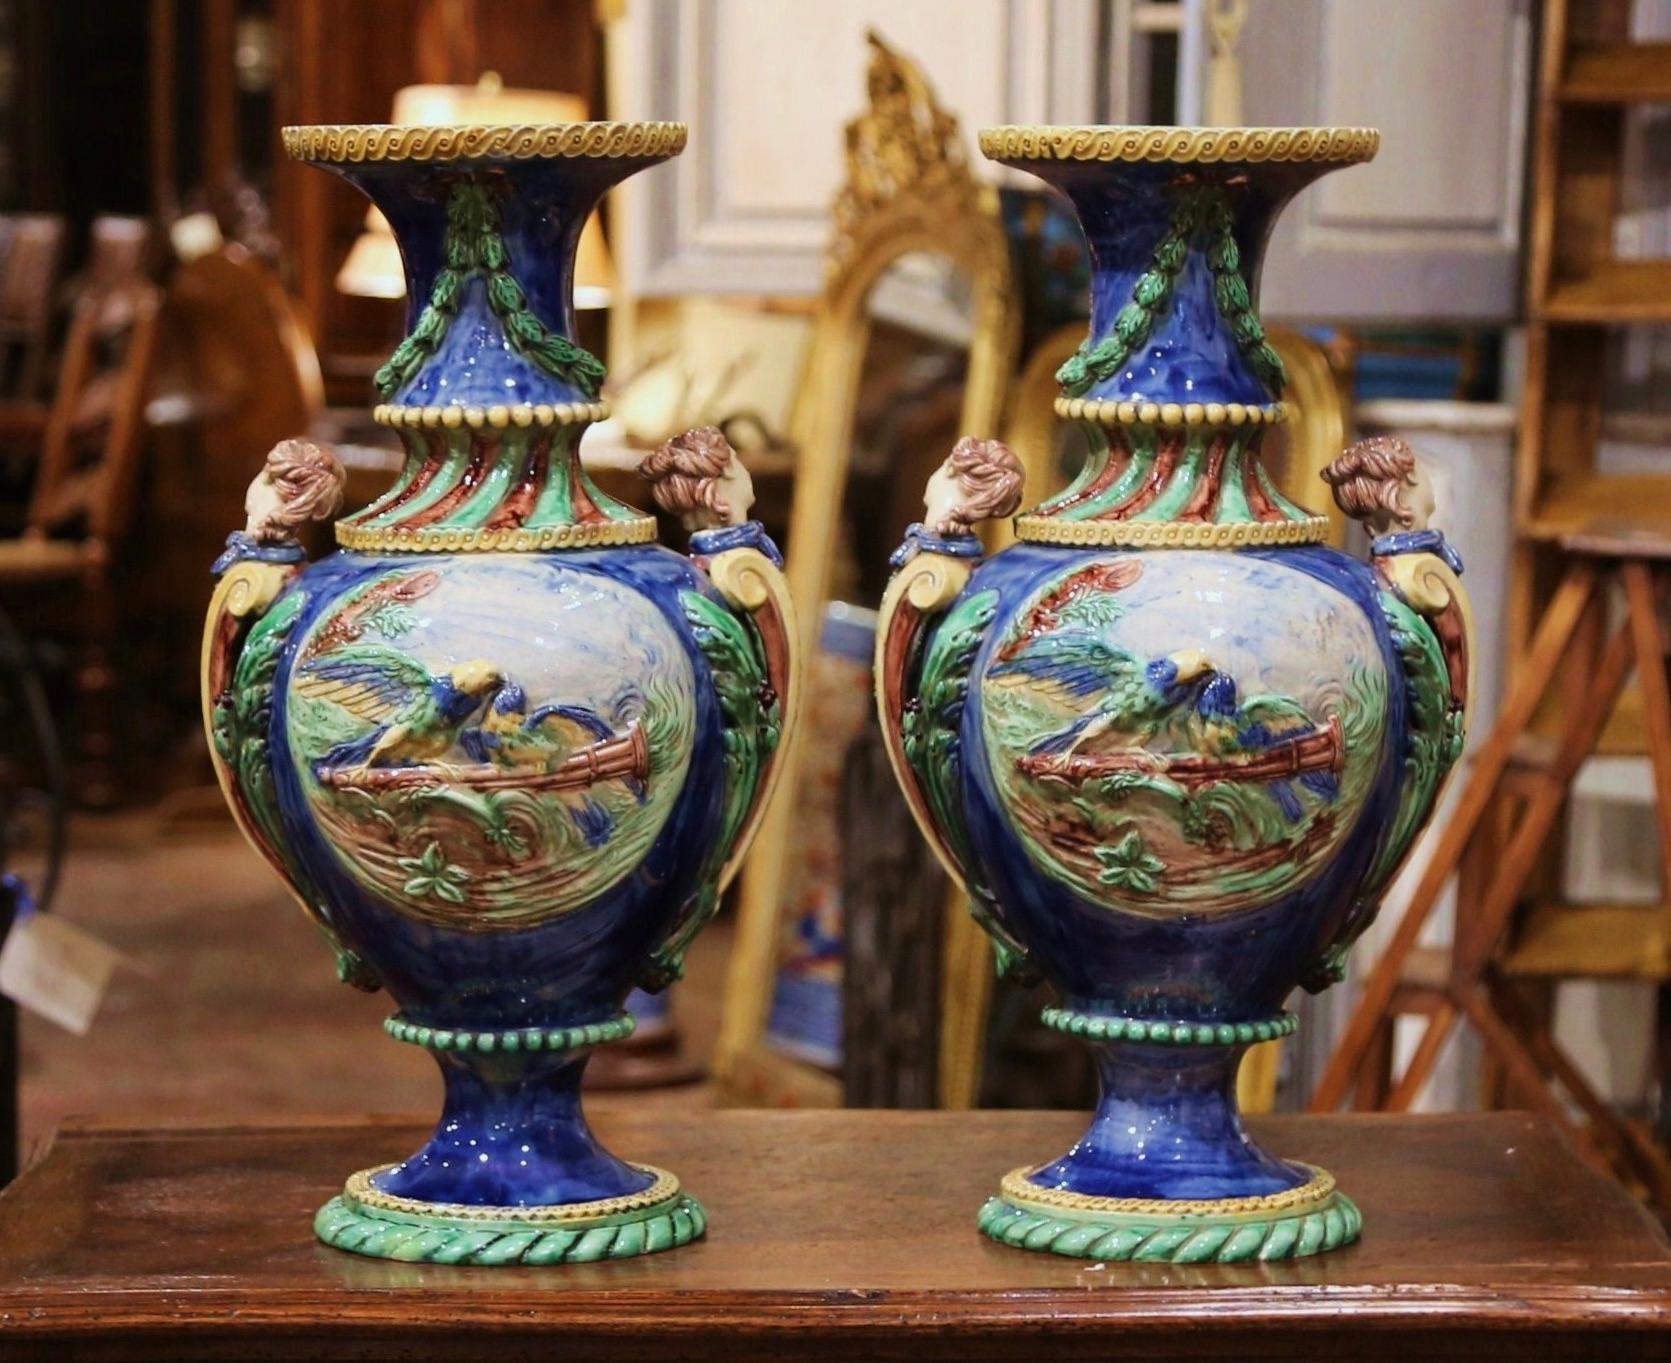 Ces élégants vases anciens en majolique ont été fabriqués en France, vers 1870. Attribué à l'artiste français Thomas Sergent (1830-1890), chaque grand récipient, doté d'anses sculptées en forme de femme, repose sur une base ronde et présente, des